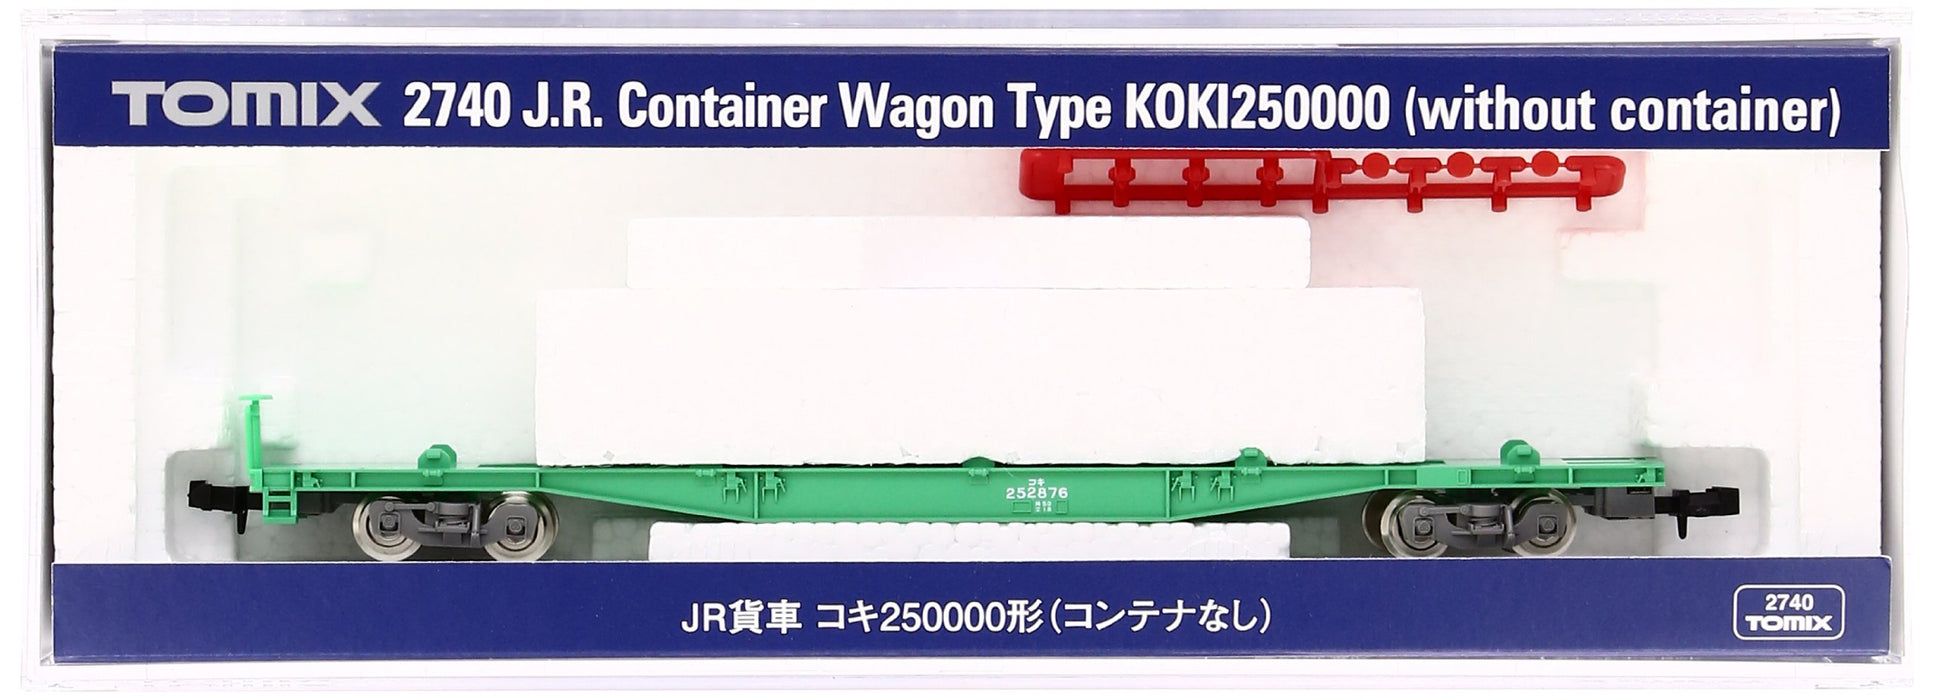 Tomytec Tomix Koki250000 - Spur N 2740 - Modelleisenbahn-Güterwagen, ohne Container